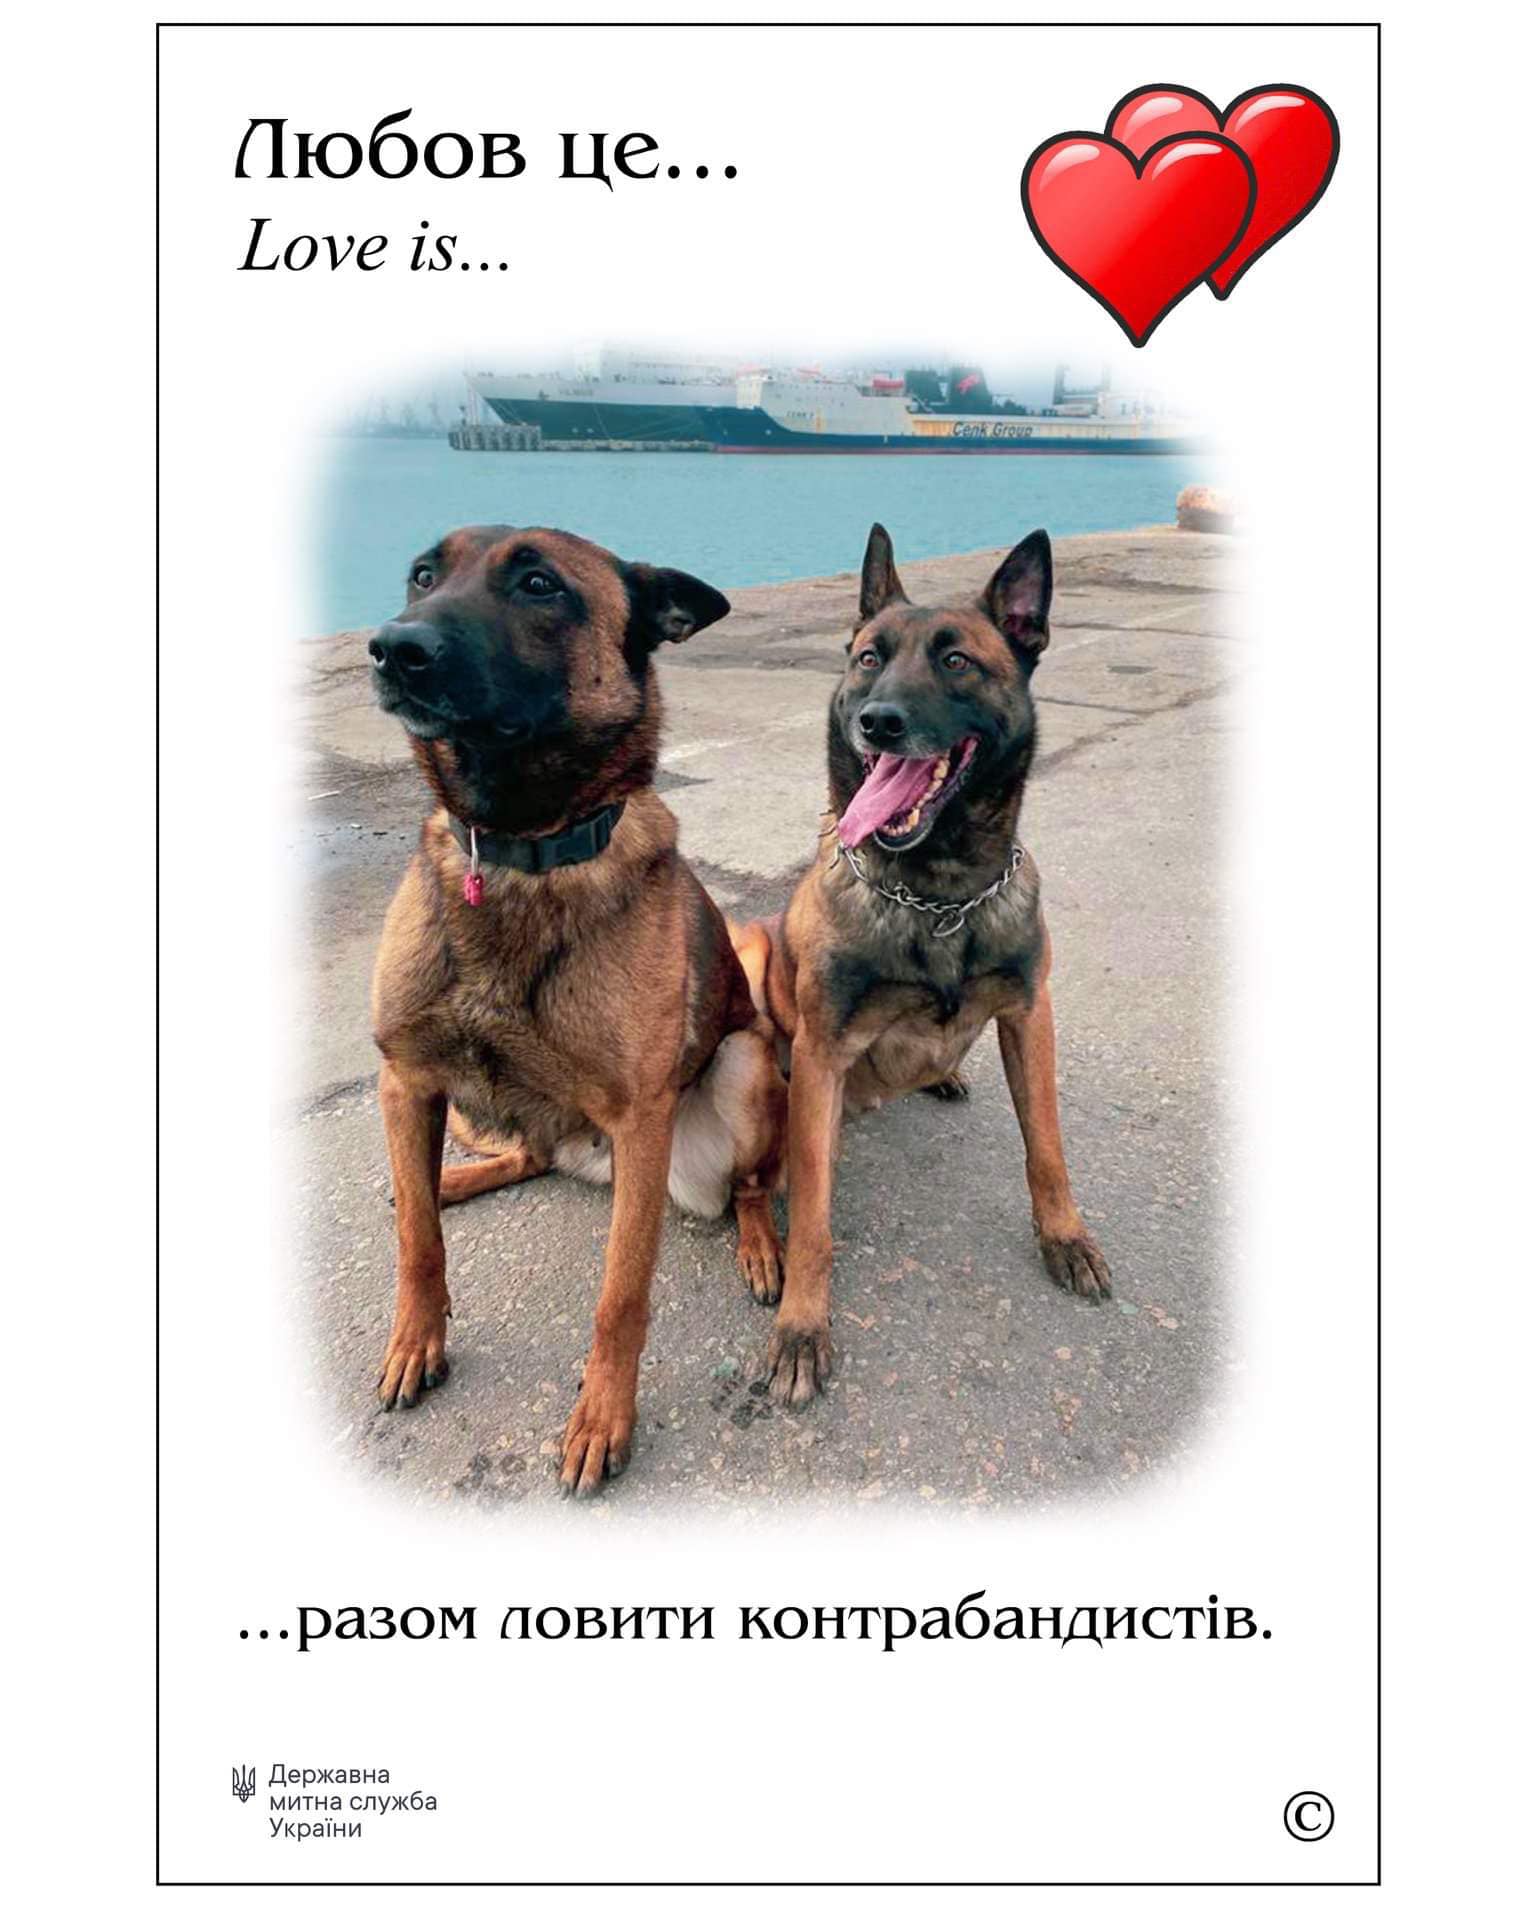 Любовь есть везде: удивительная и вместе с тем печальная история одесских служебных собак Фифы и Боцмана